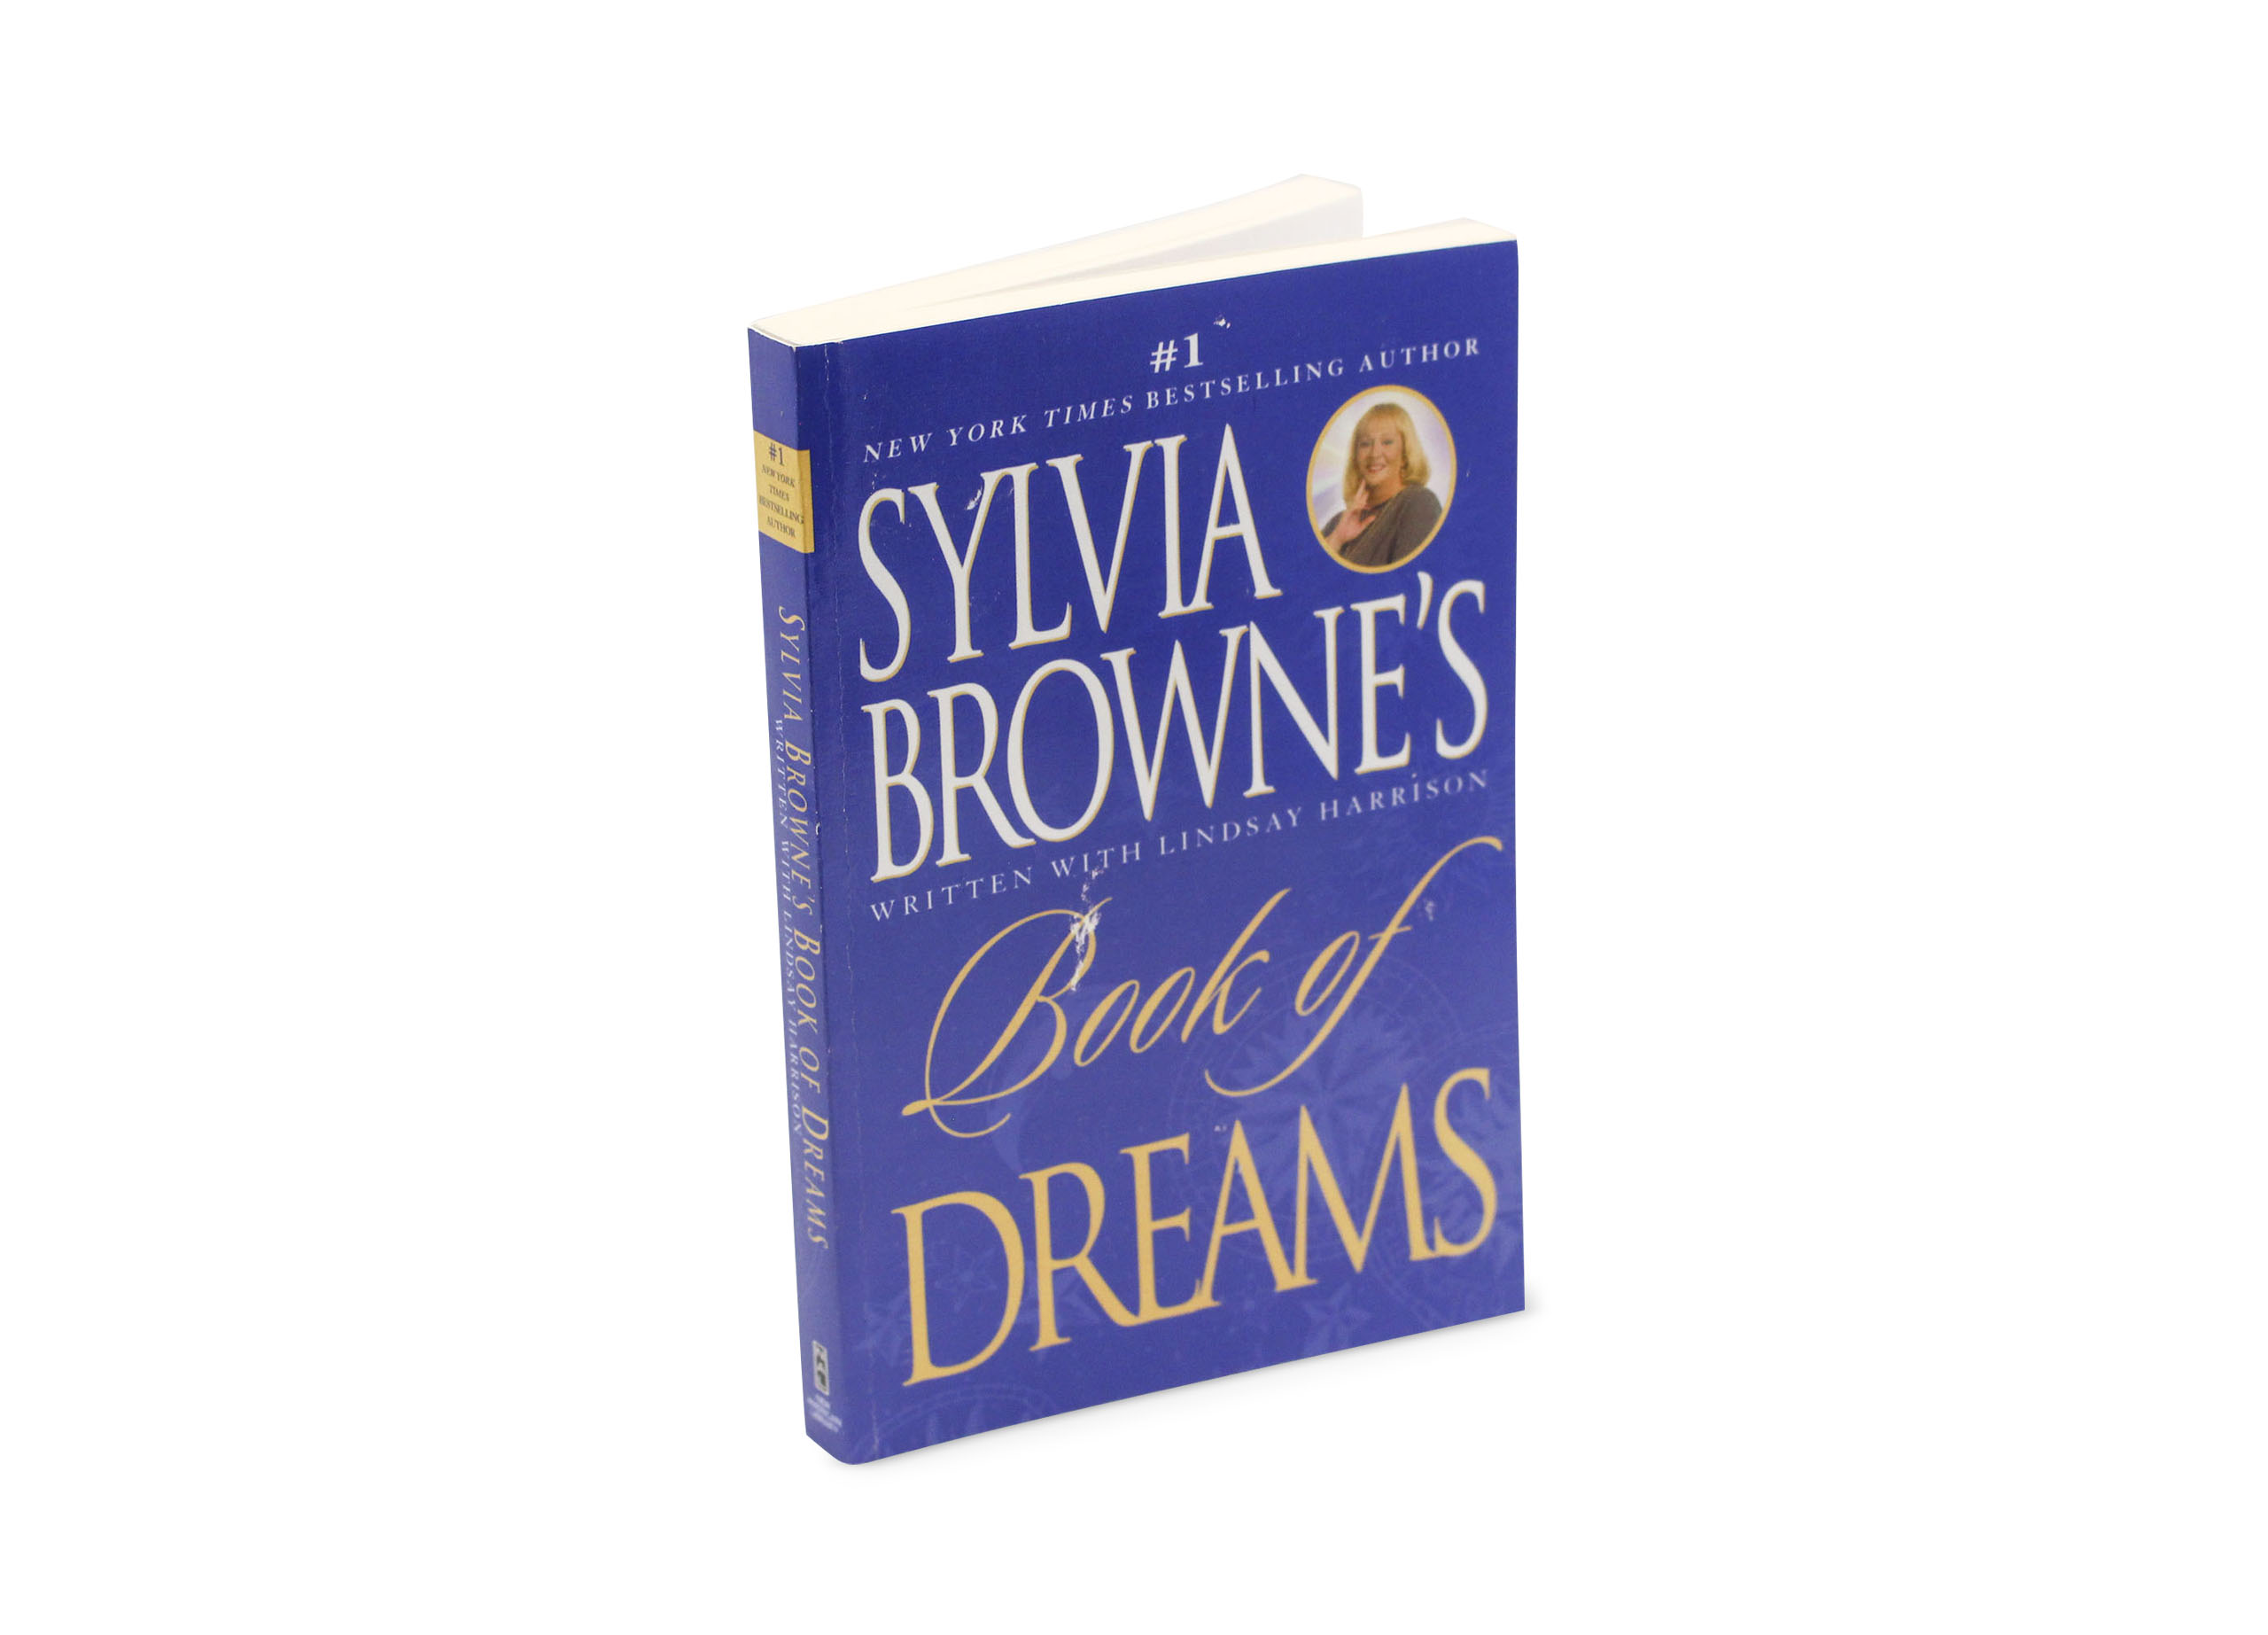 Book of Dreams - Crystal Dreams